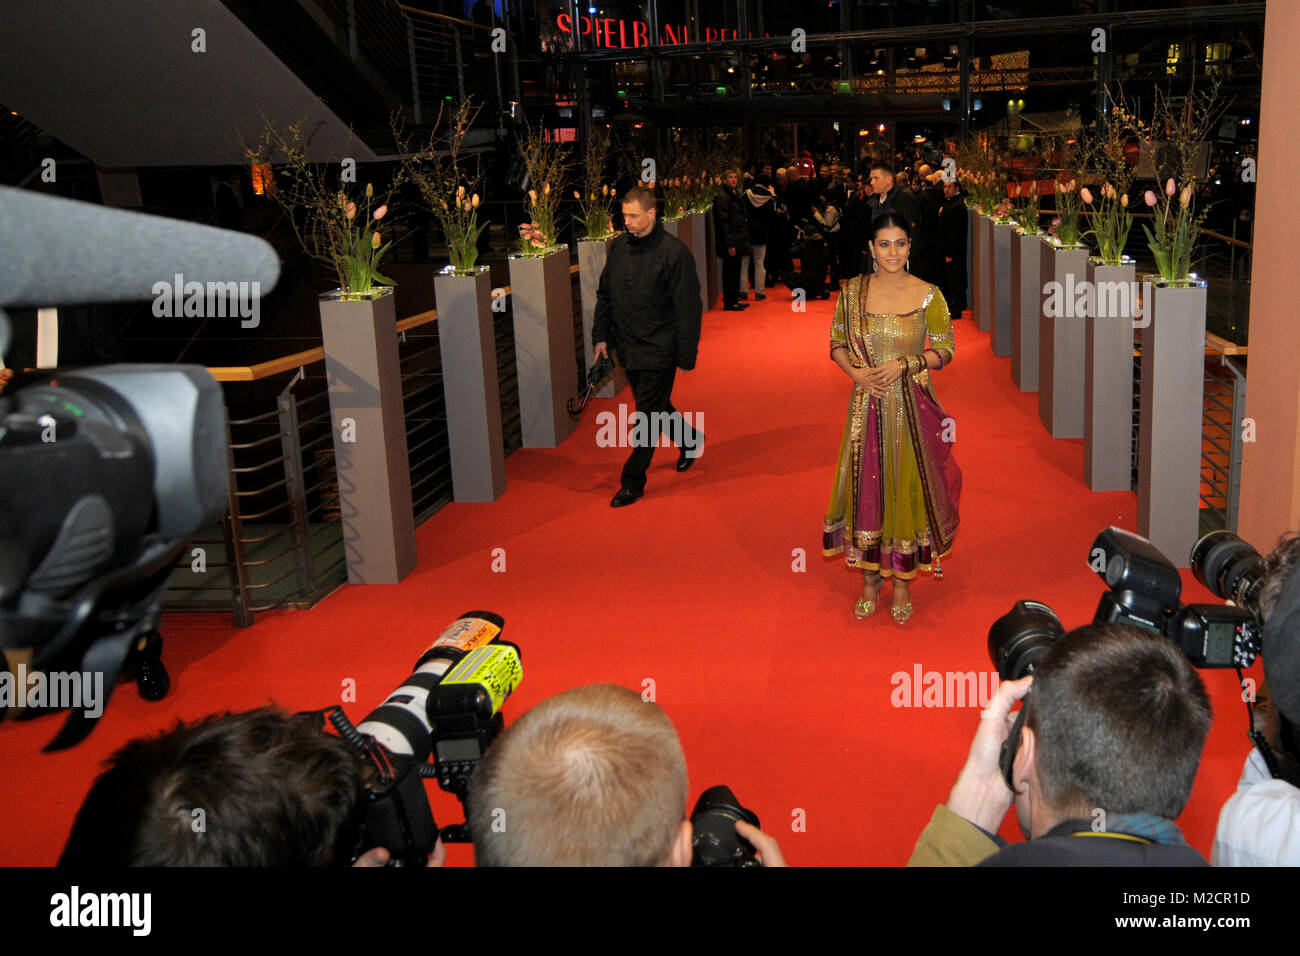 Der indische Schauspielerin Kajol Devgan bei der Premiere von 'My Name is Khan' im Rahmen der 60. Berlinale in Berlin am 12.02.2010 Stock Photo